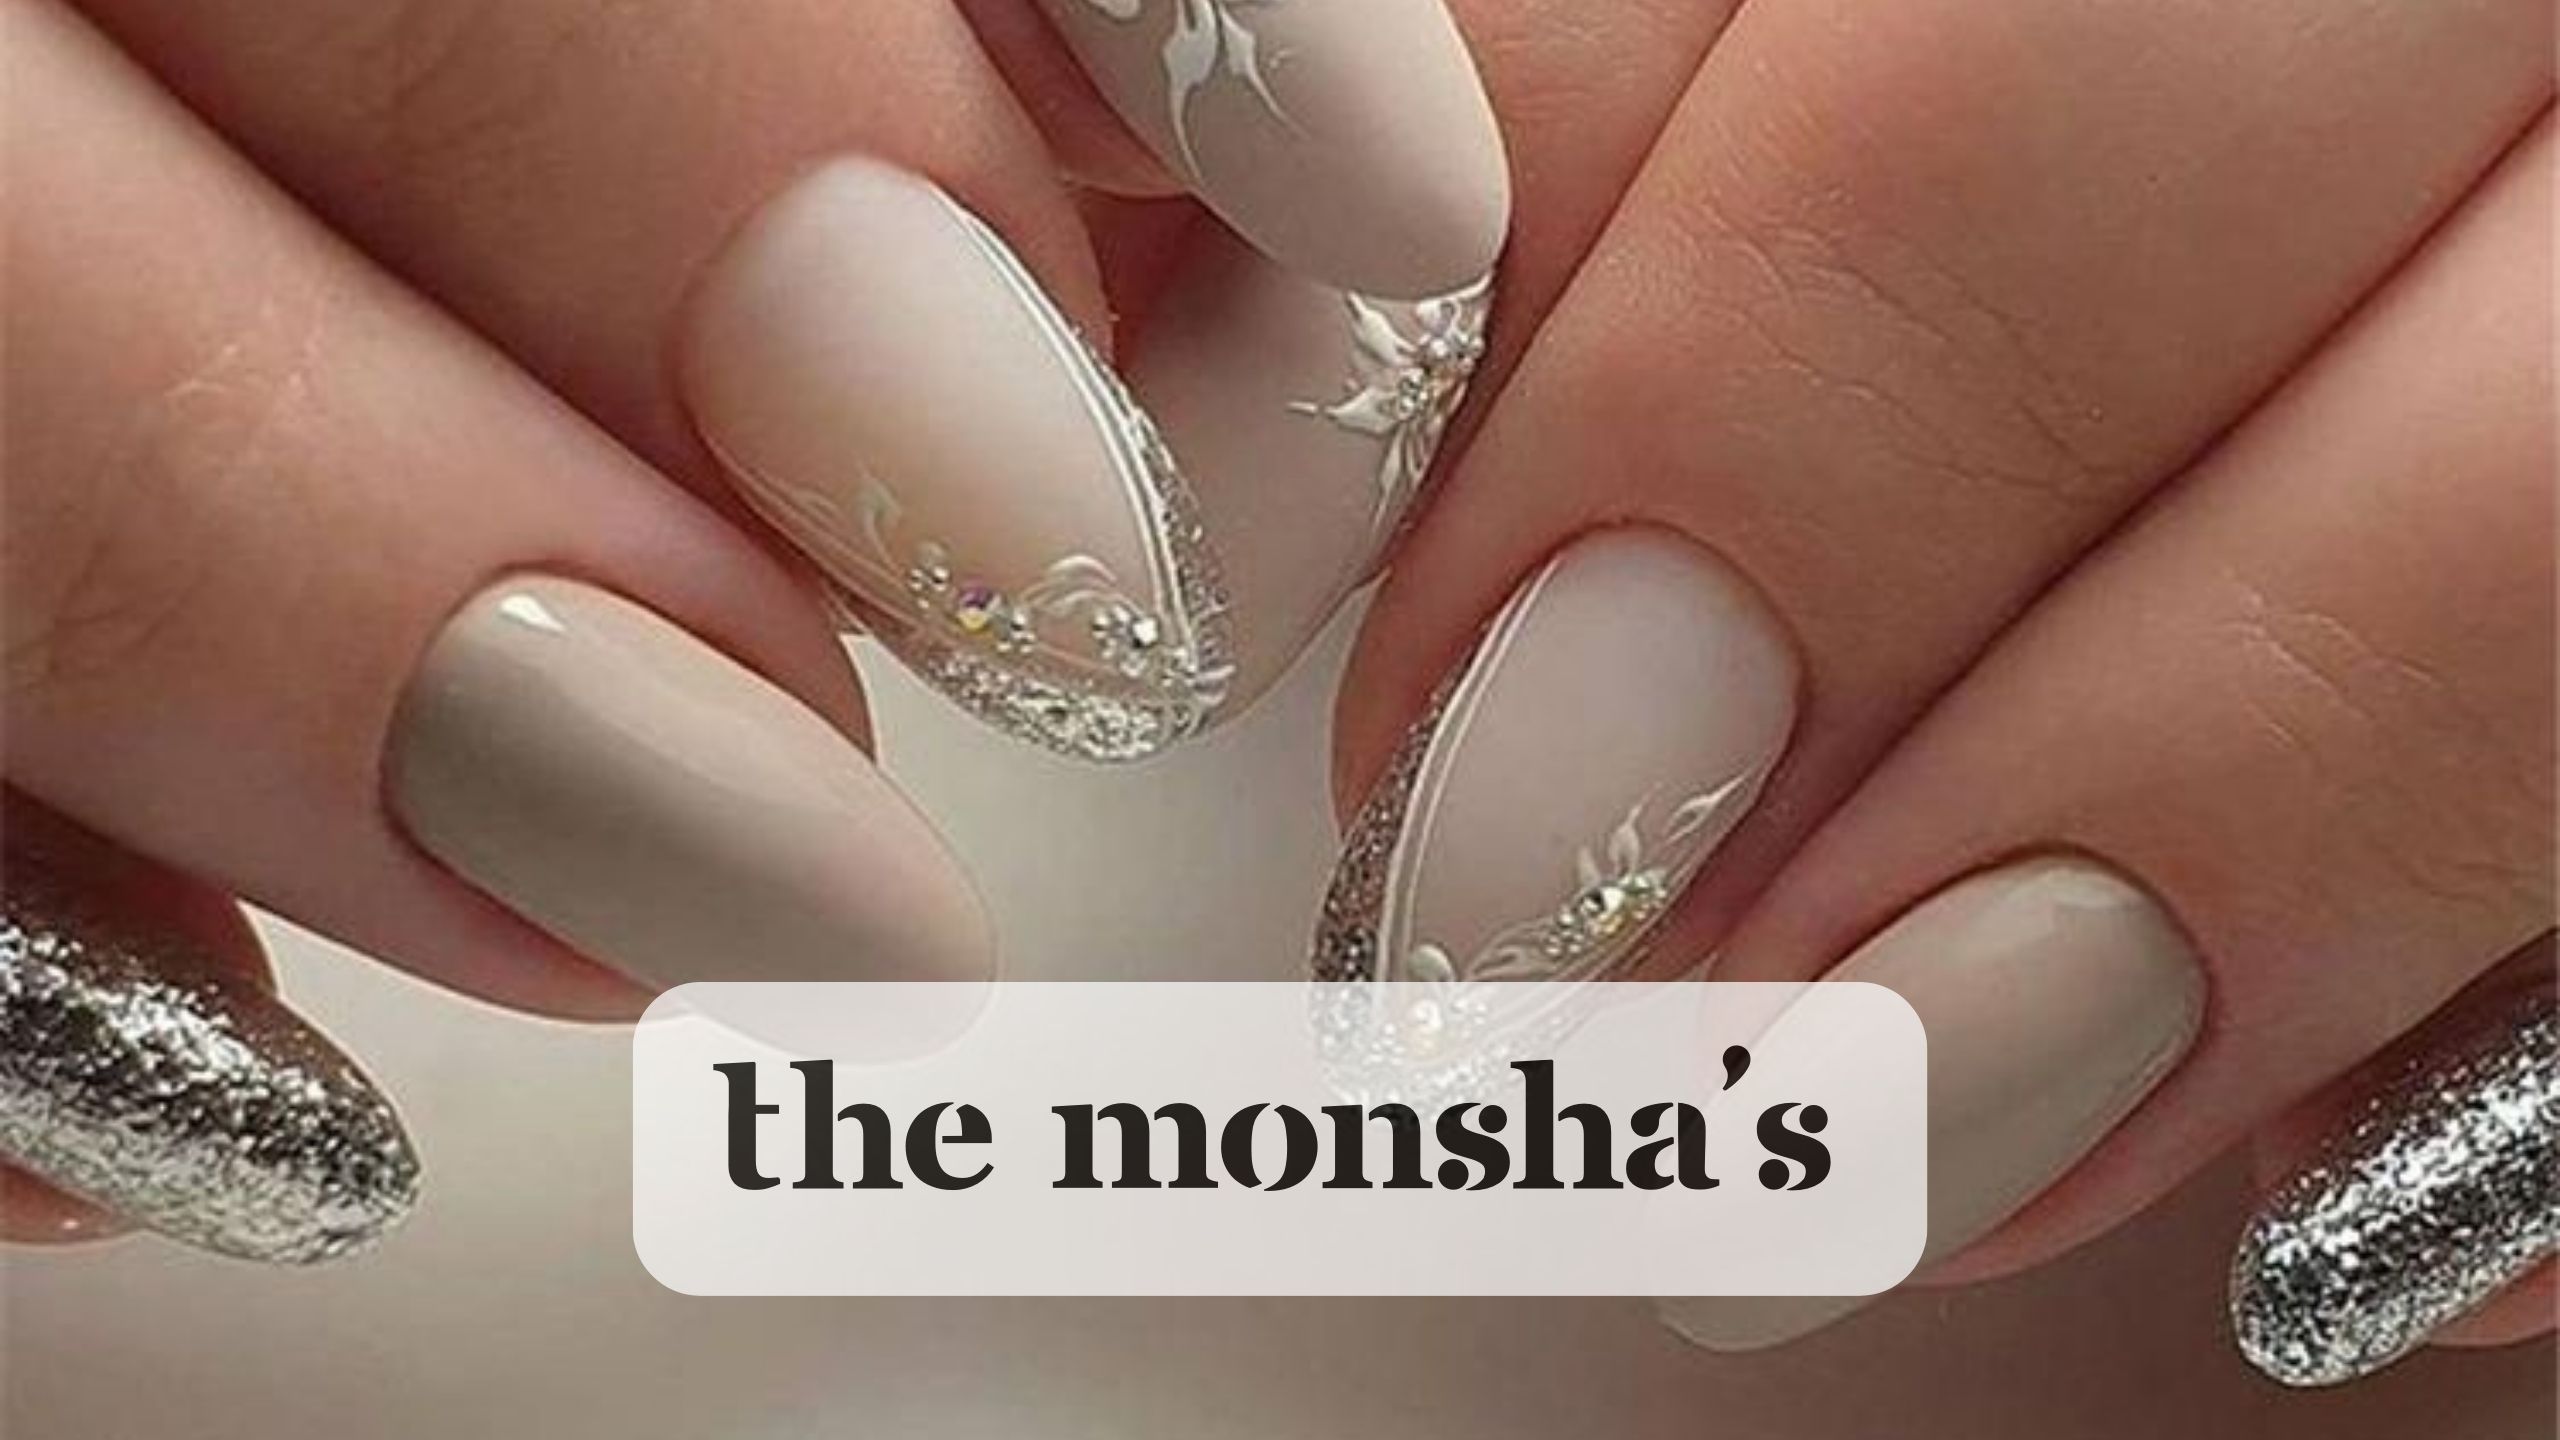  "The Monsha's Premier Nail Art & Extension Services"